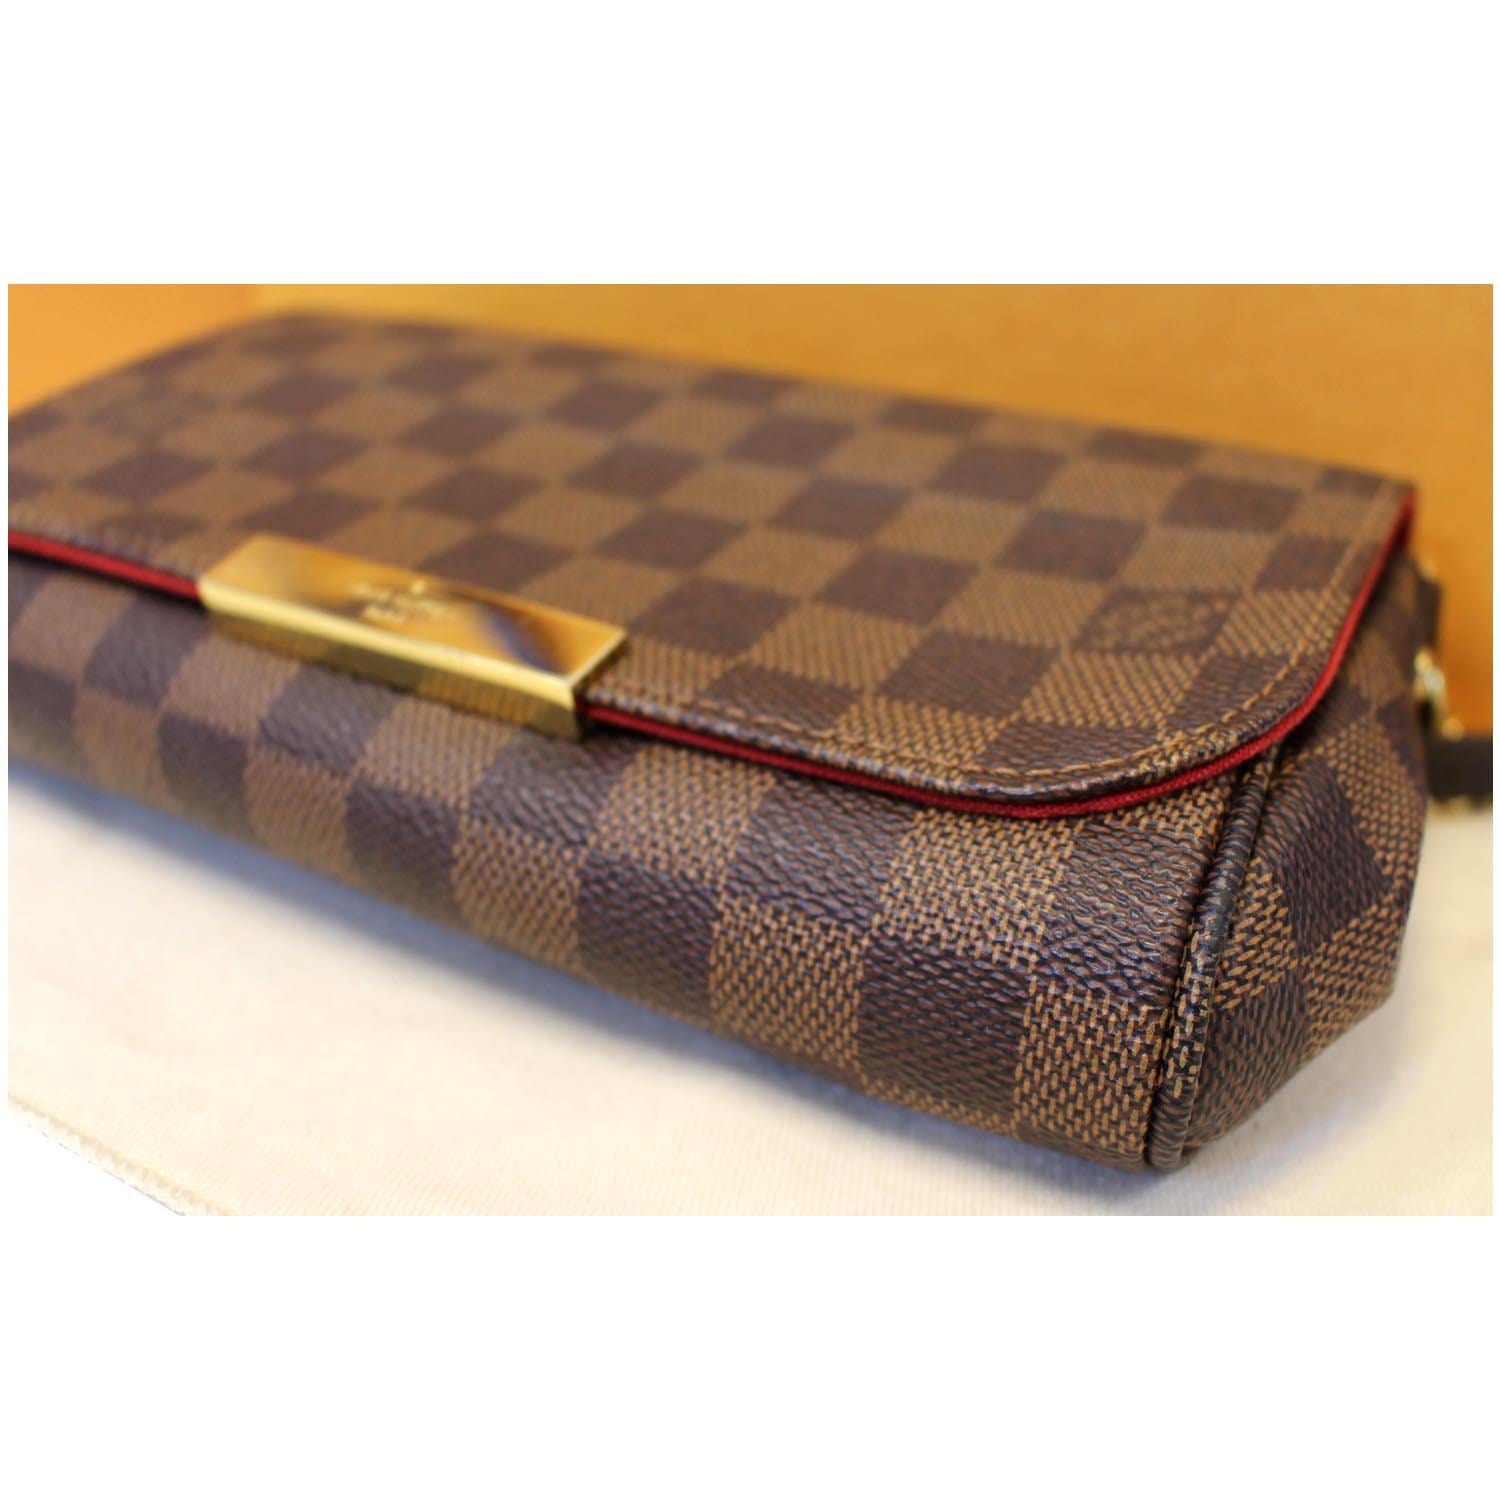 ❌SOLD❌ Louis Vuitton Favorite PM Damier Ebene Bag (DU2157) - Reetzy